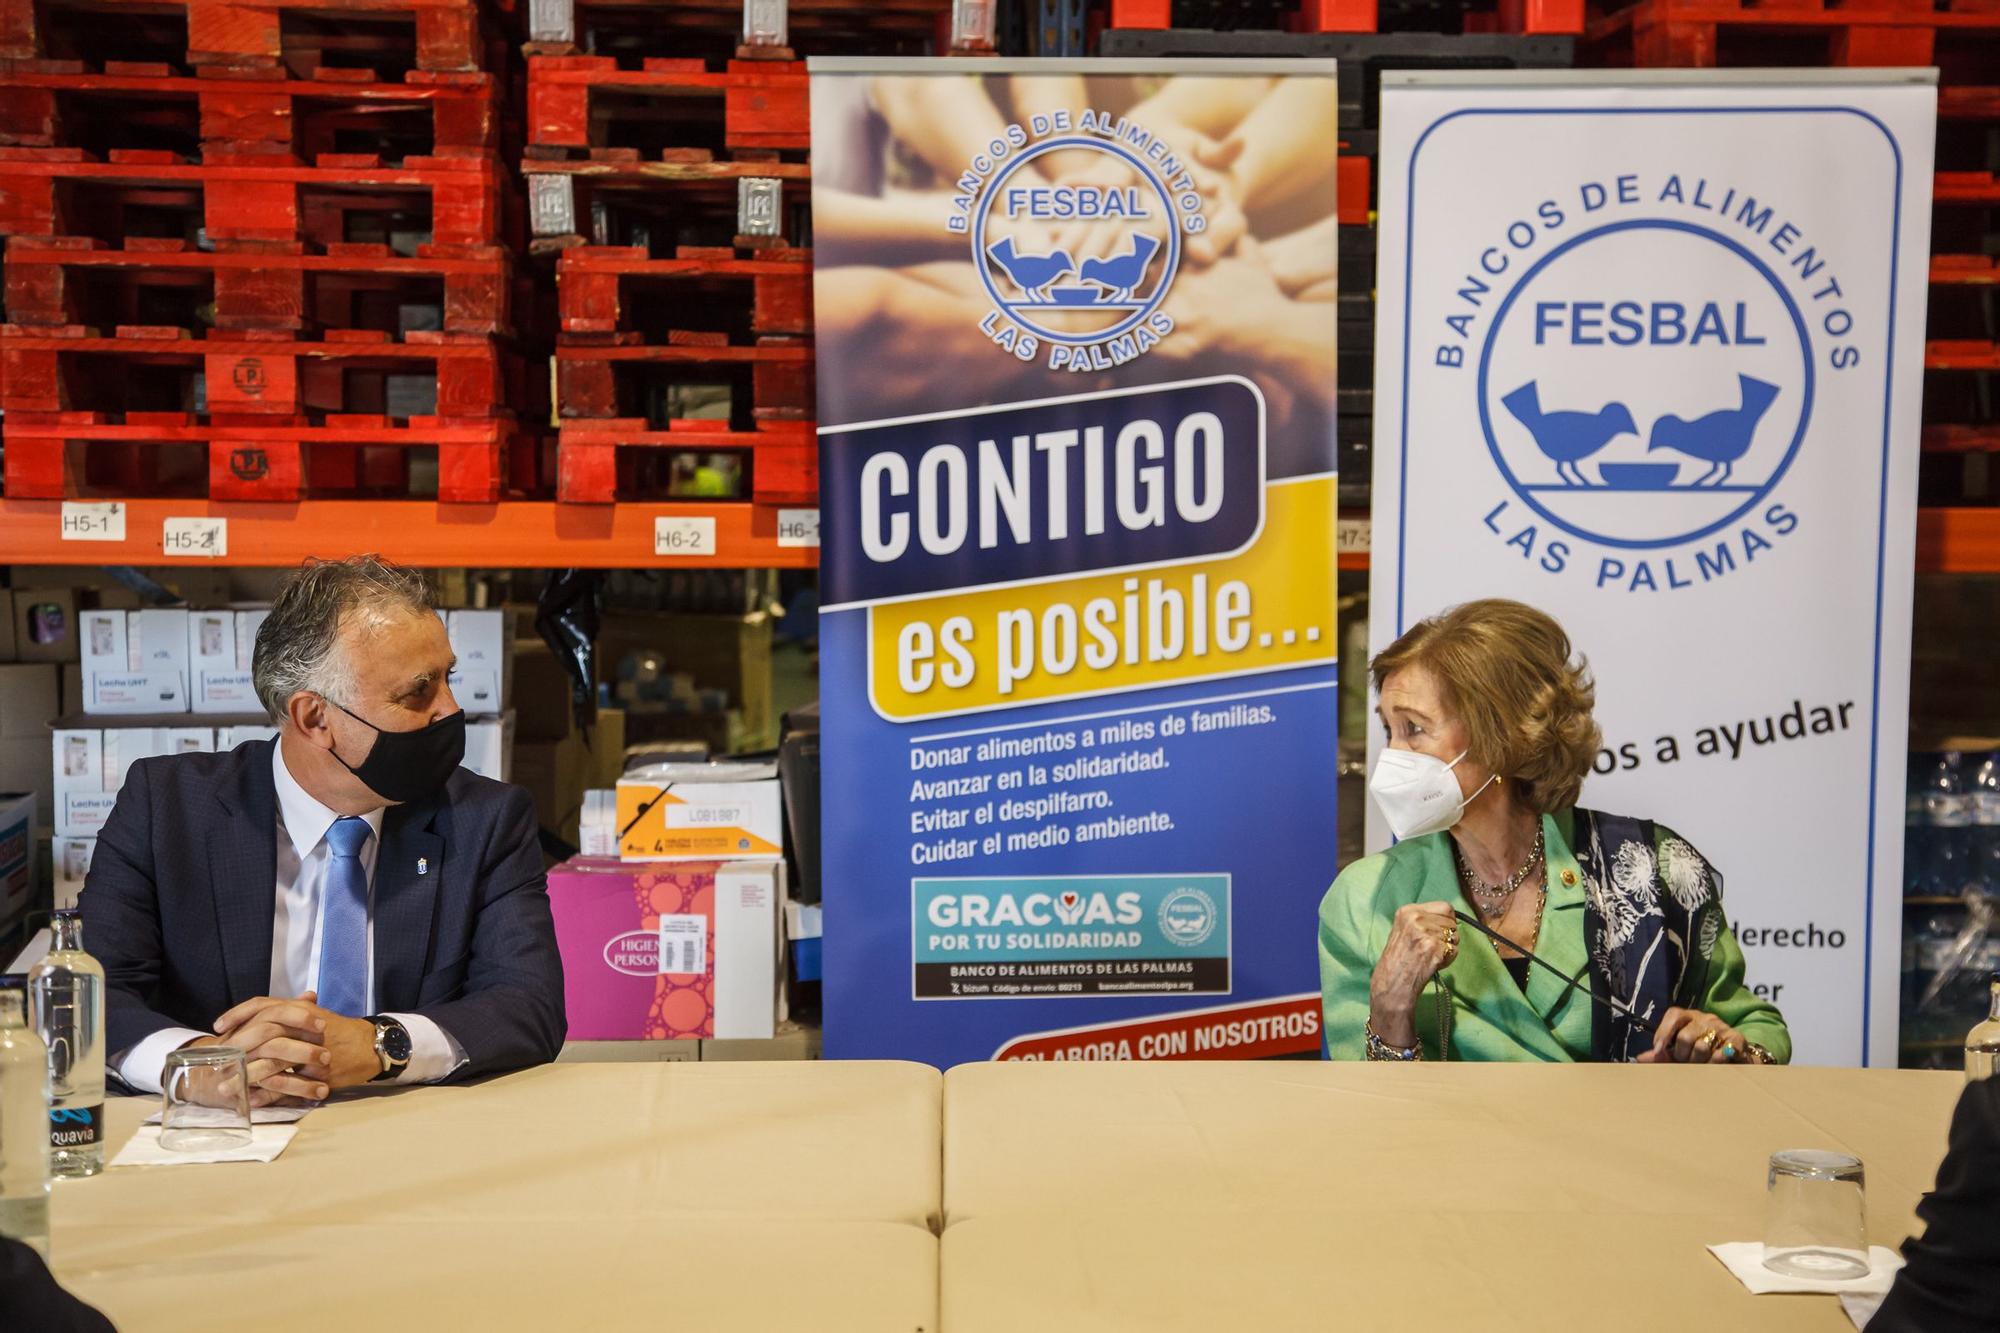 La Reina Sofía conoce el trabajo del Banco de Alimentos de Las Palmas de Gran Canaria